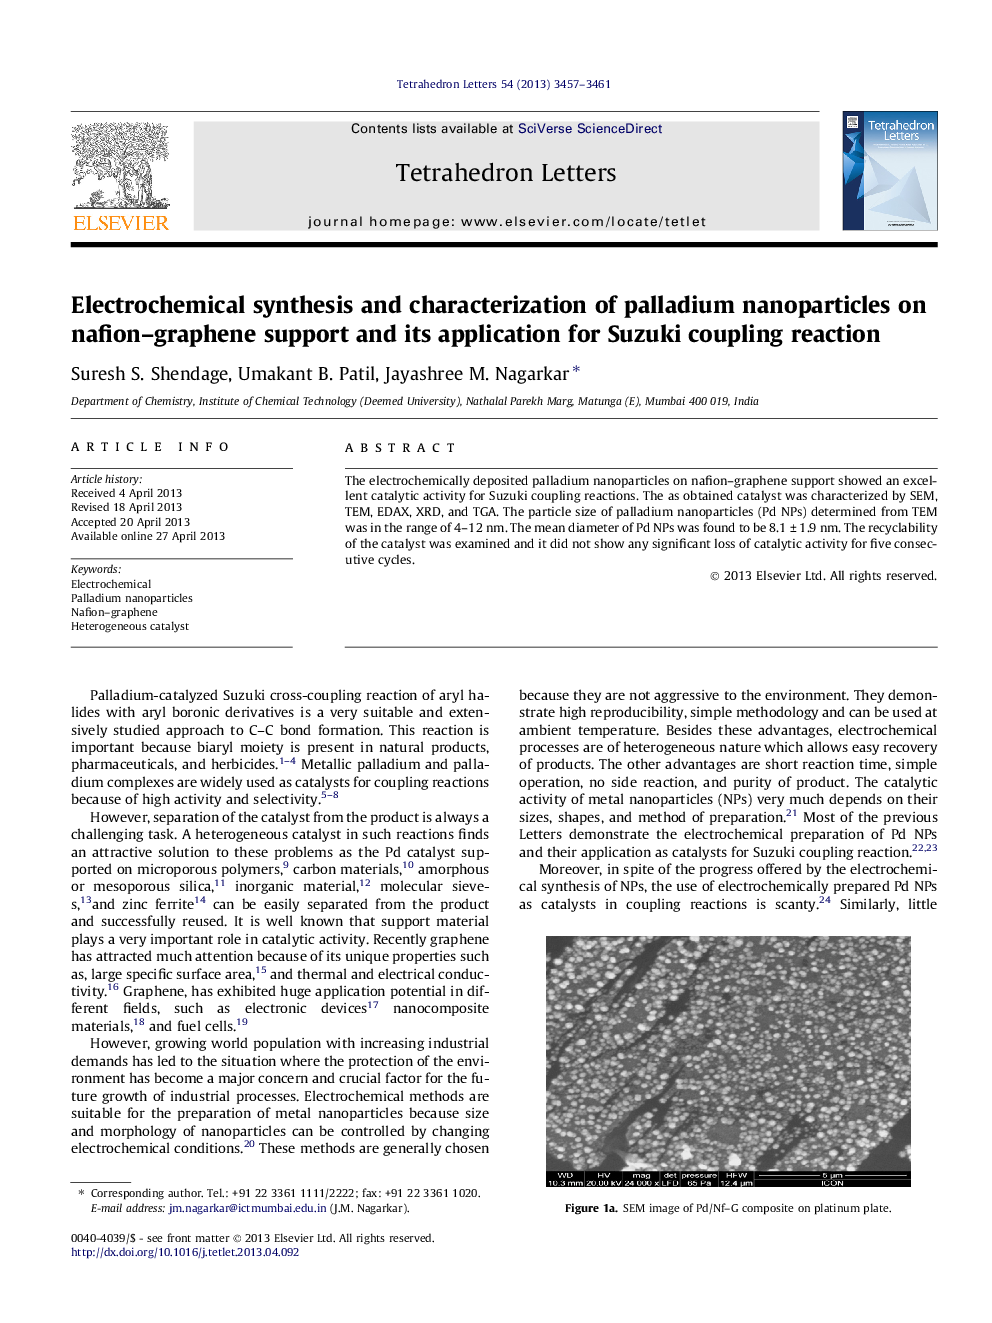 سنتز الکتروشیمیایی و خصوصی سازی نانوذرات پالادیوم بر روی پشتیبانی نافین گرافن و کاربرد آن برای واکنش جوش سوسوکی 